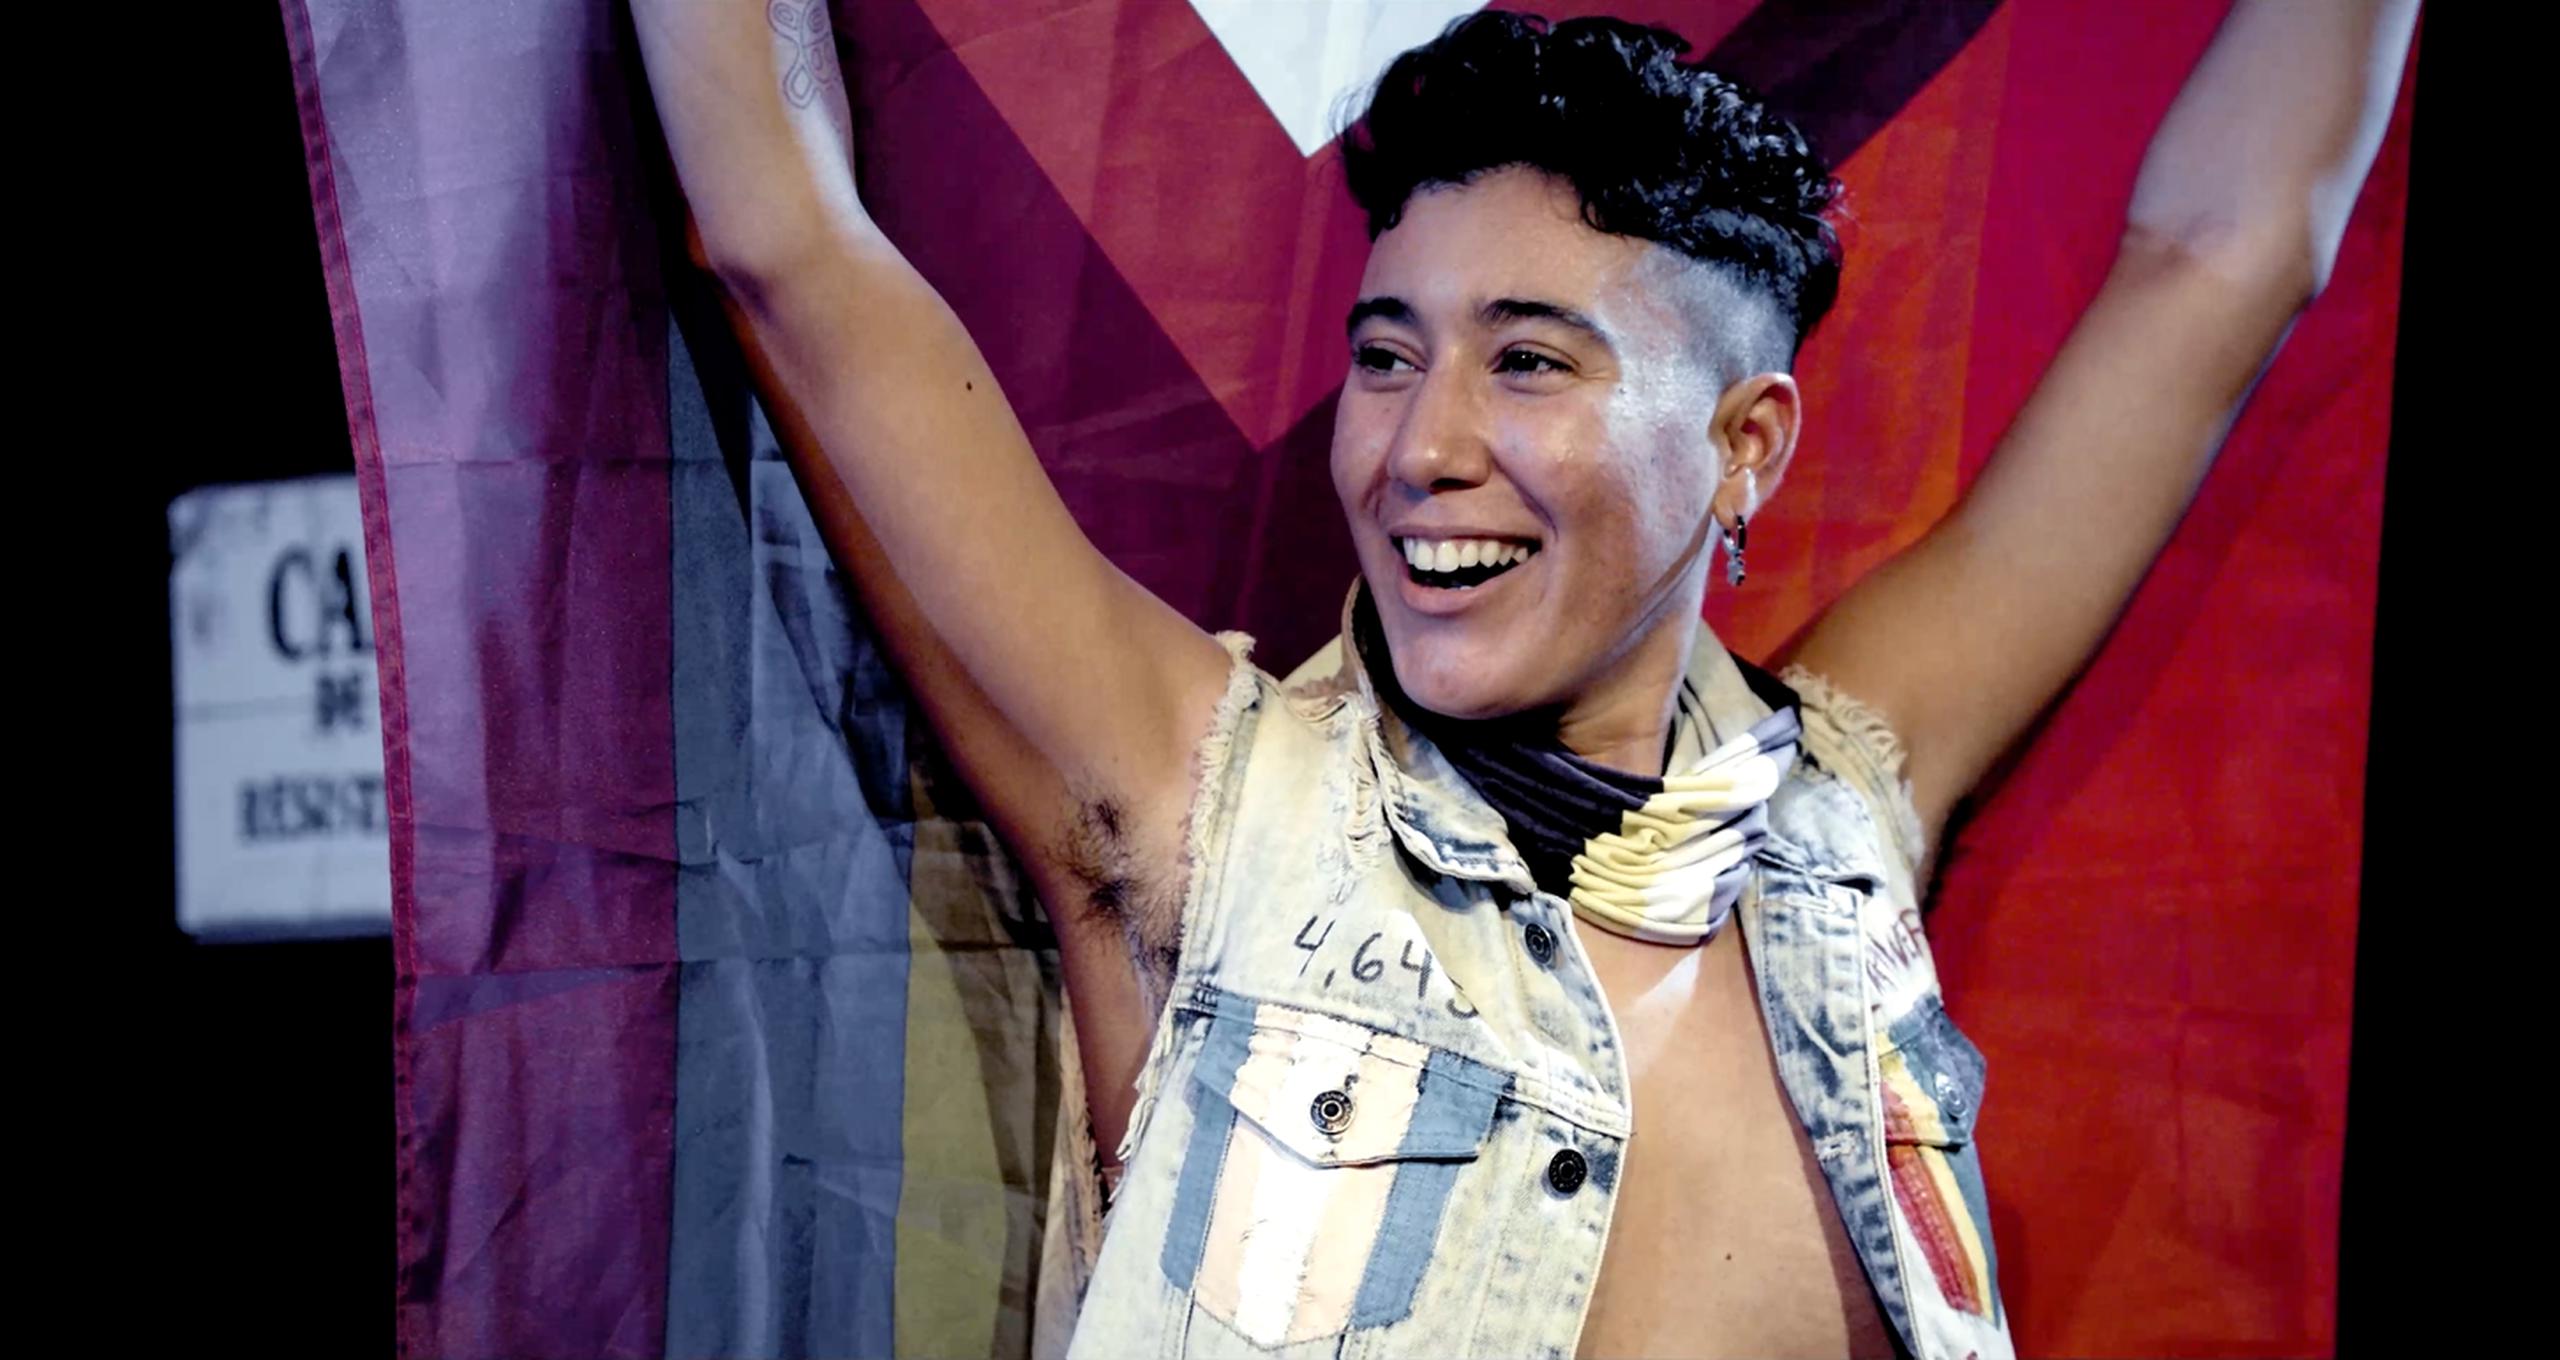 En "Calle de la Resistencia" representa su comunidad LGBTTQ+ como "Tito".